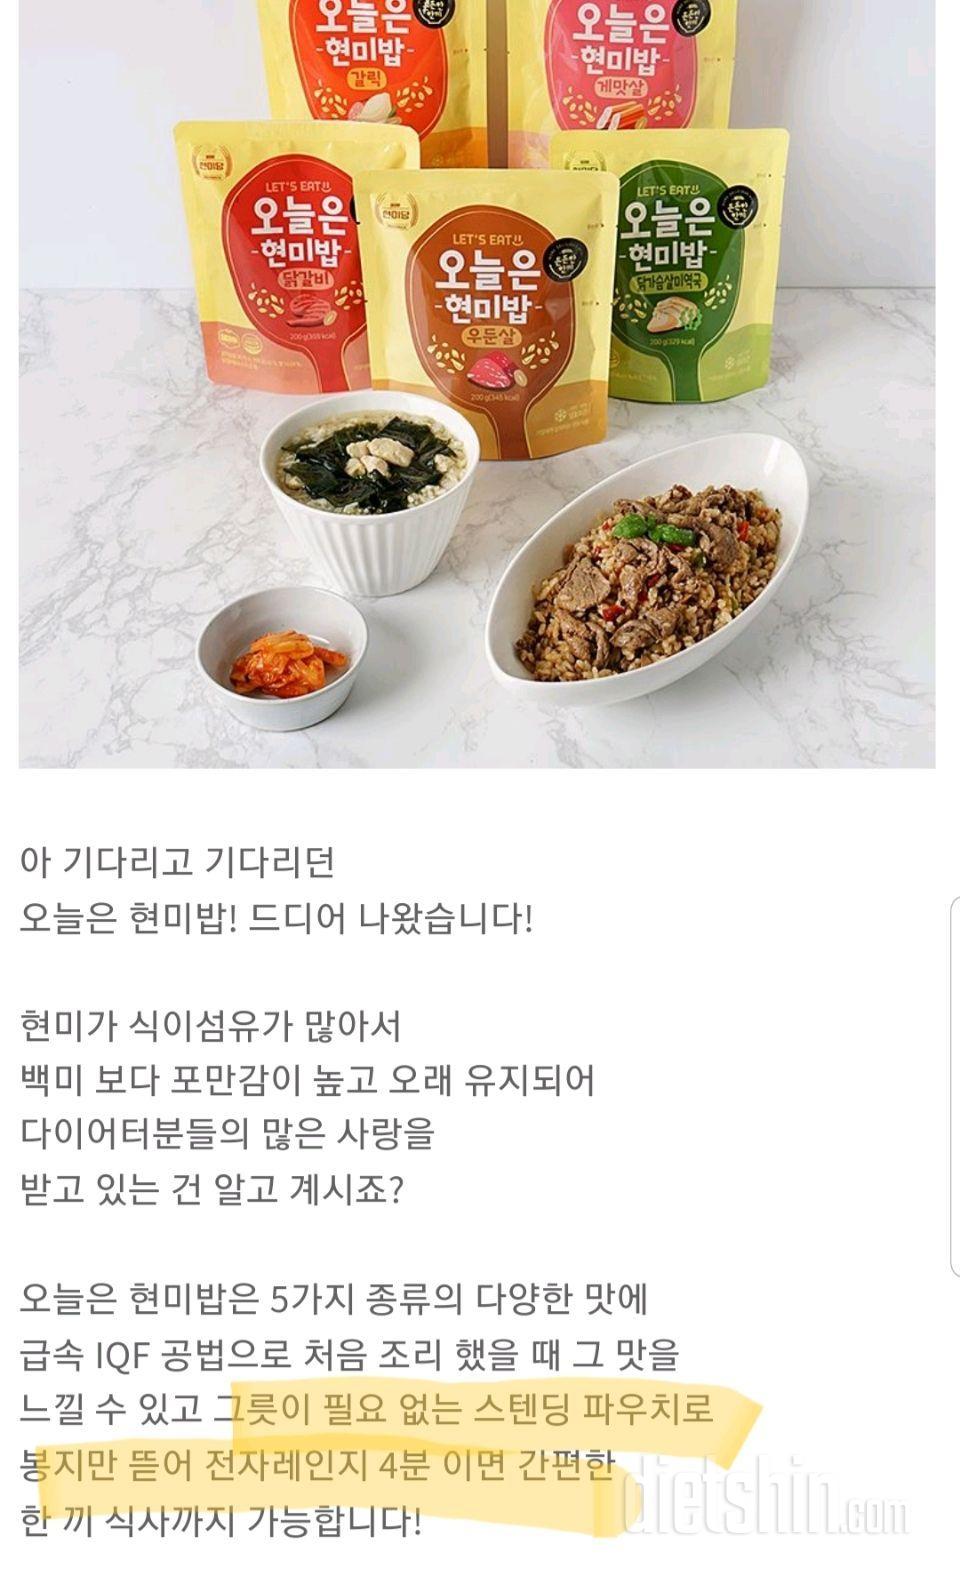 [오늘은 현미밥]_닭갈비맛! 맛있고 건강하고 매콤해 ☆강추☆